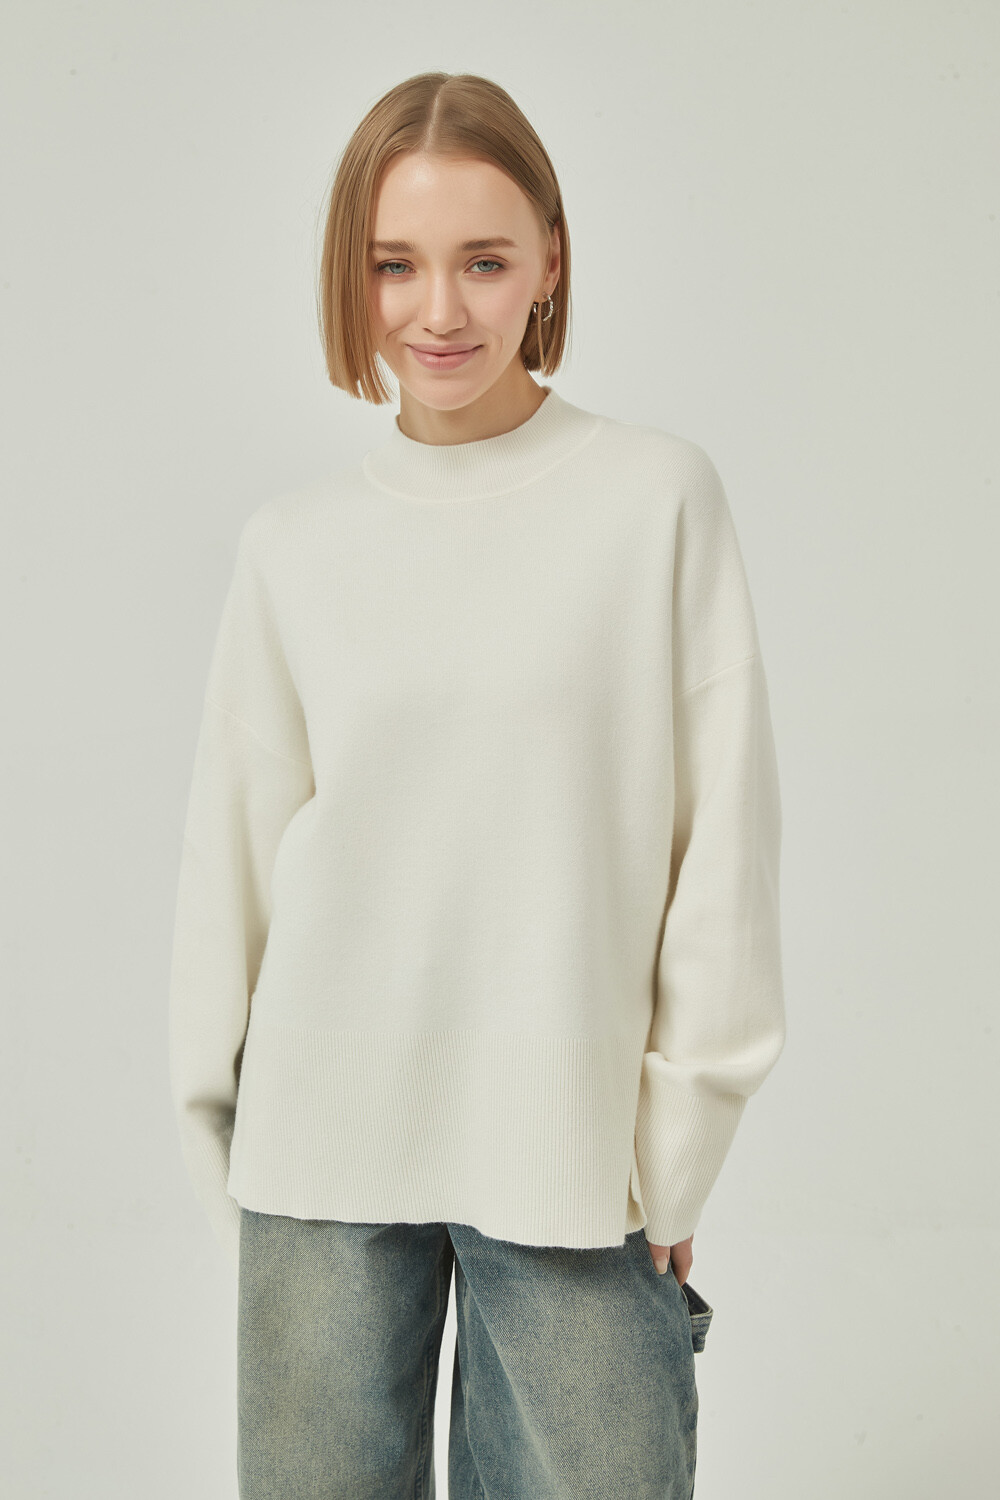 Sweater Anvard Crudo / Natural